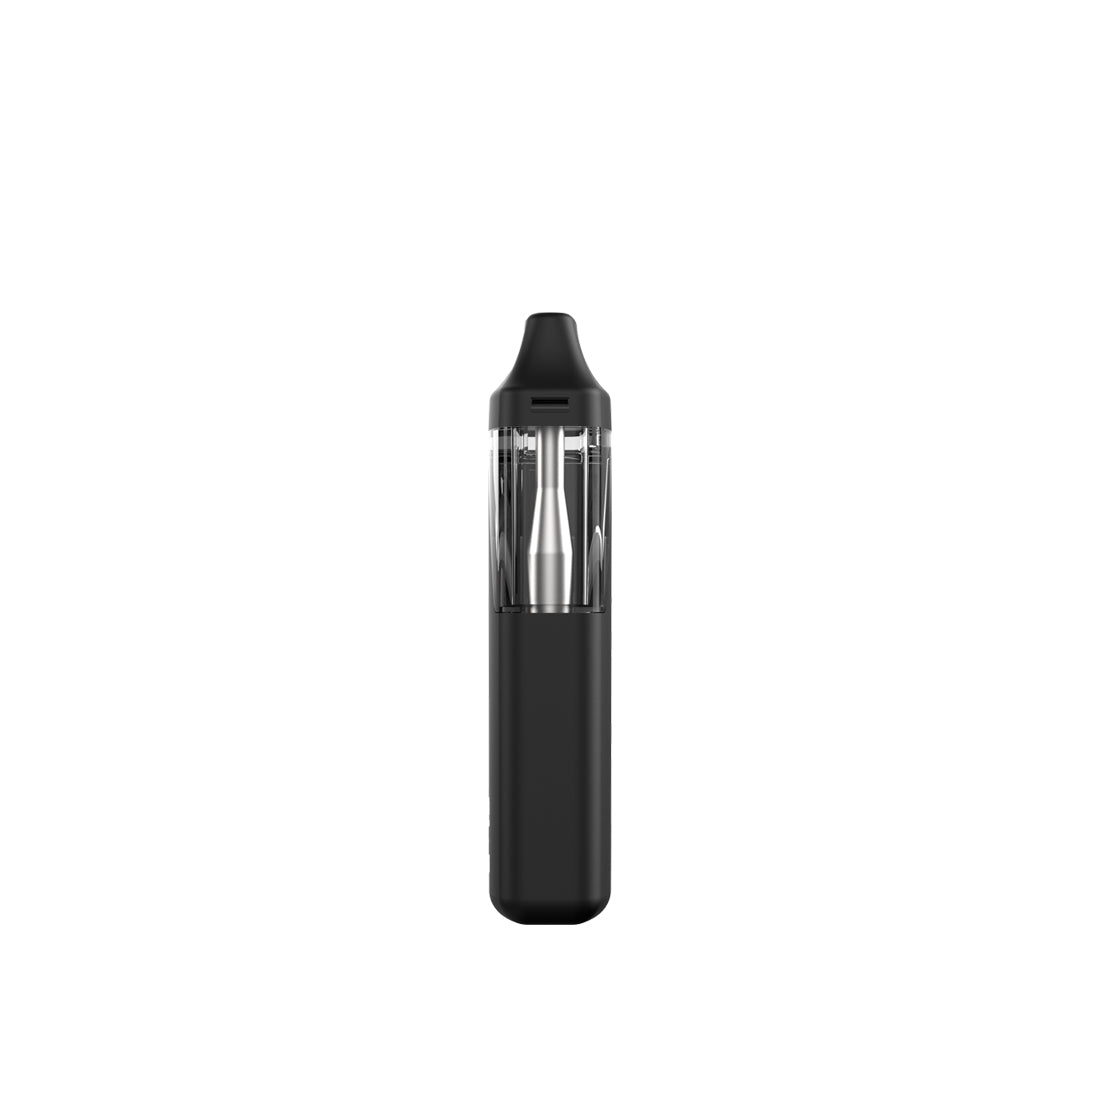 Uzo Pro 1.0mL Rechargeable Disposable Vape Pen - iKrusher